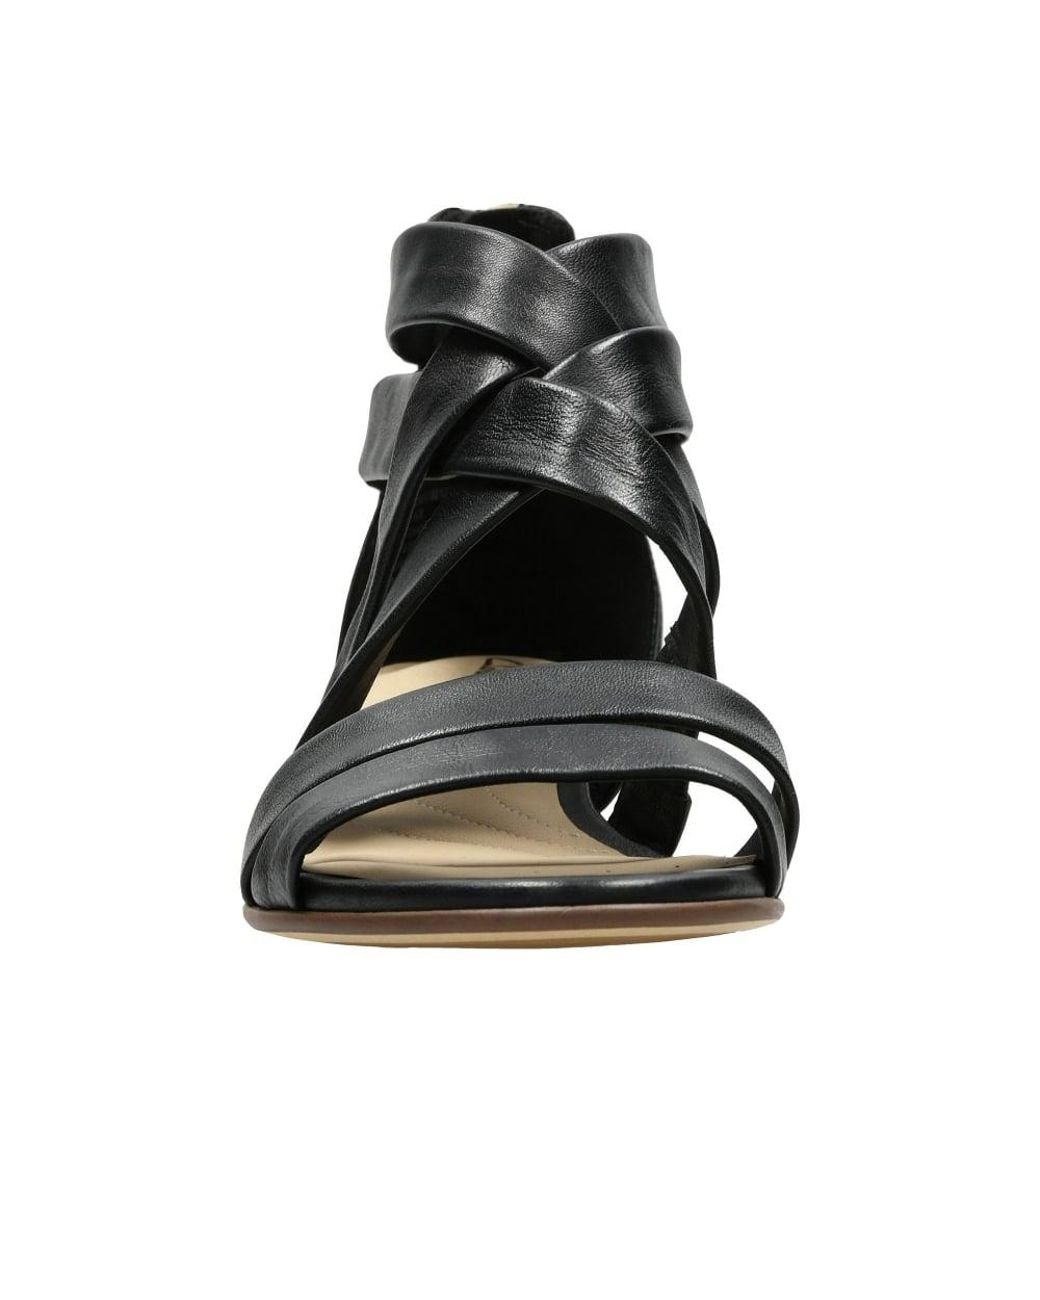 Clarks Silk Sandals in Black | Lyst